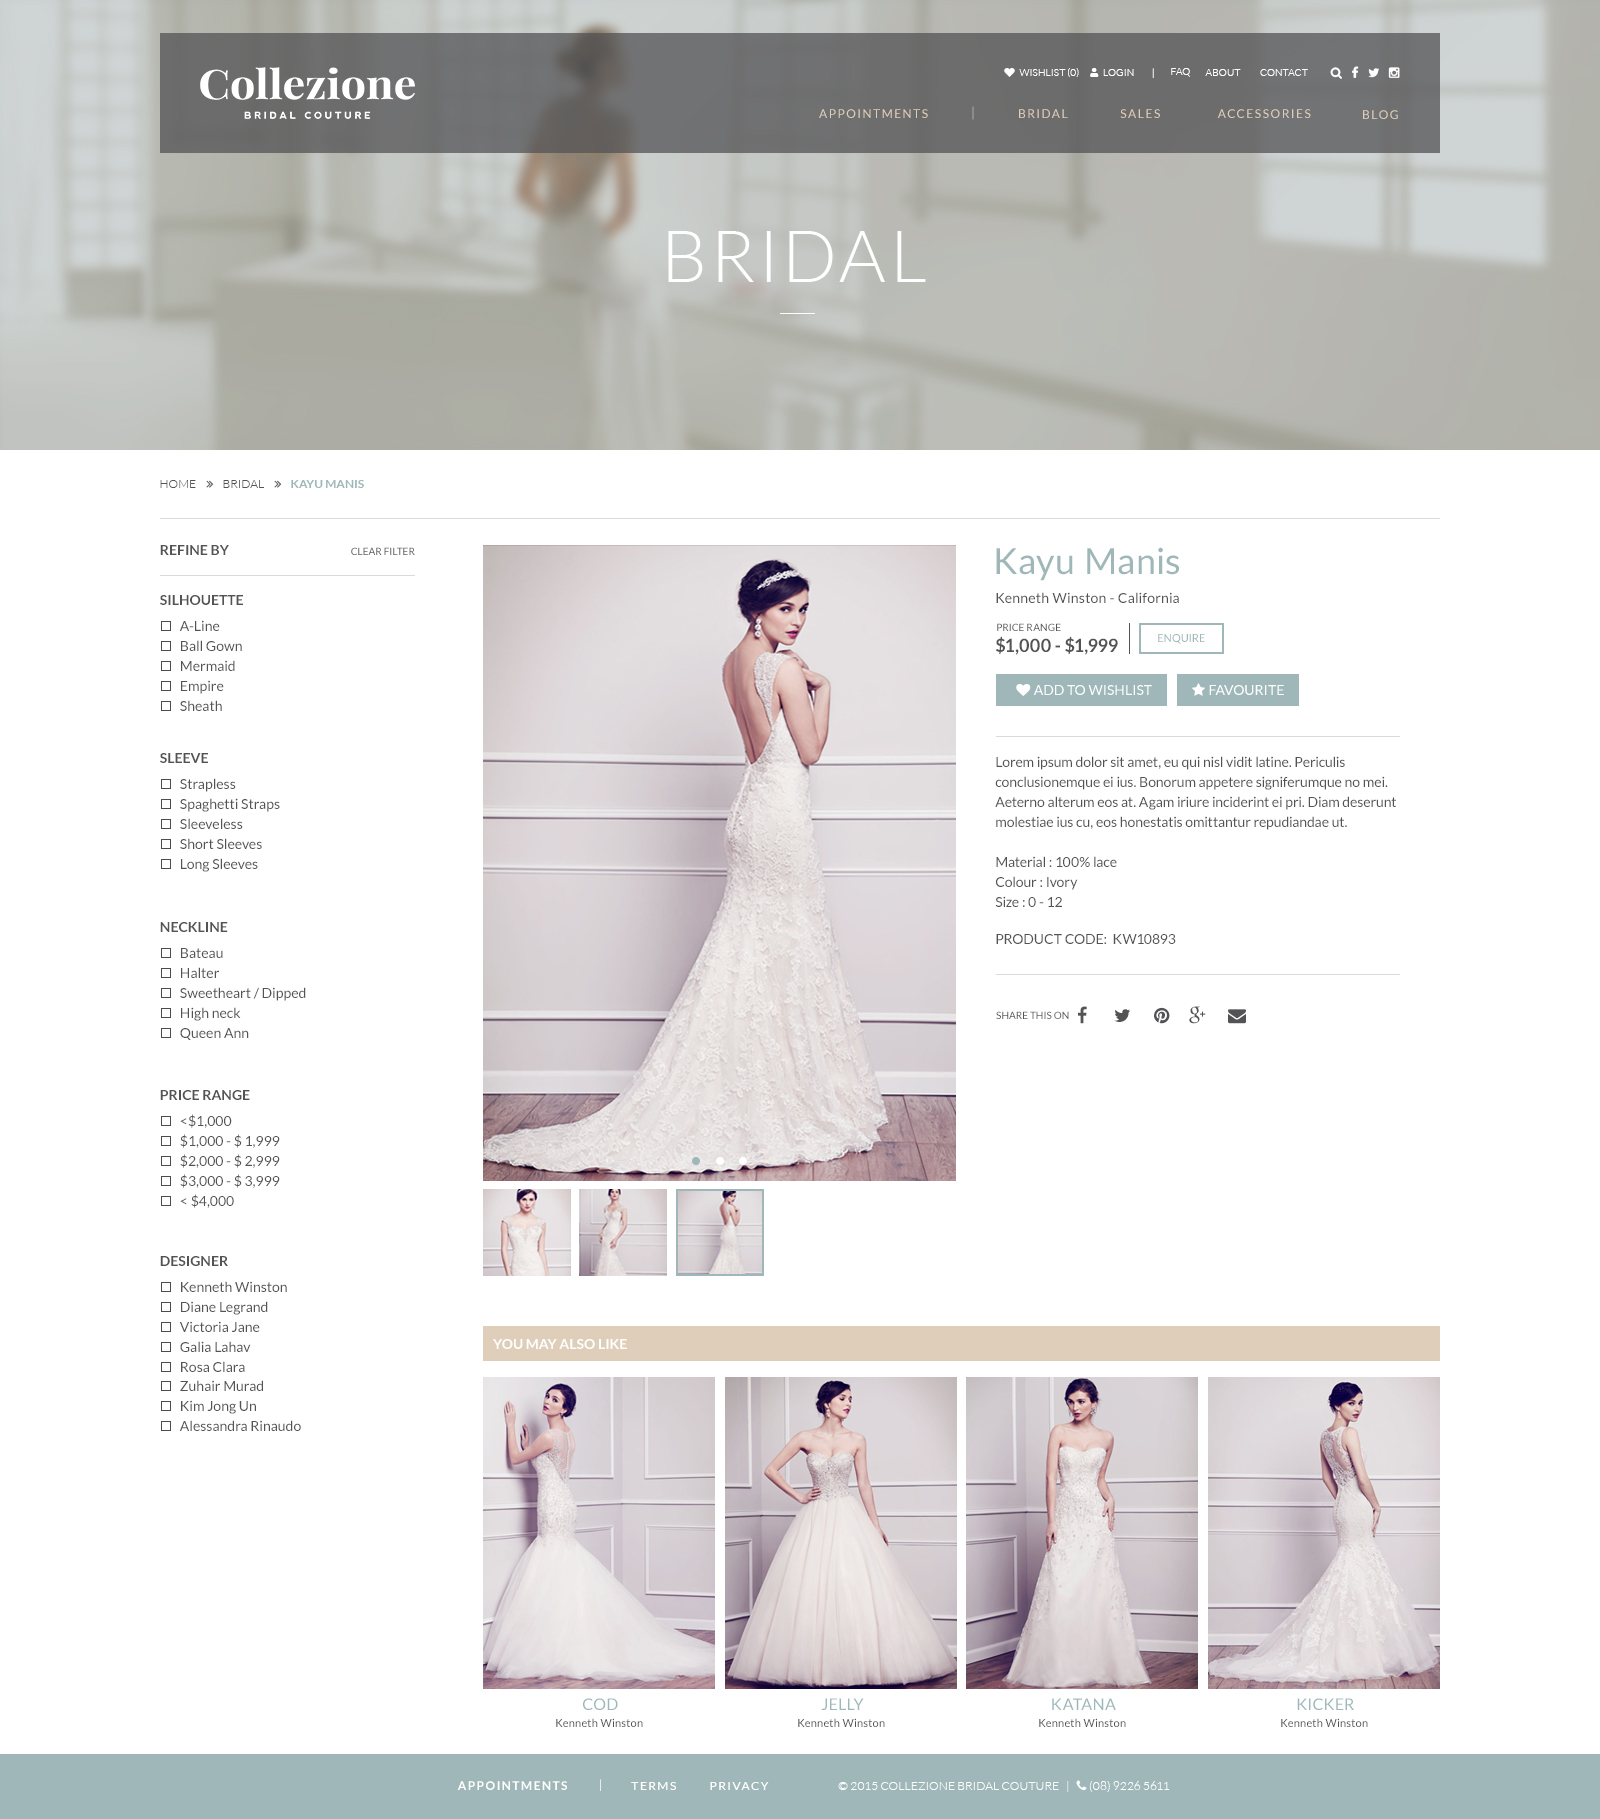 Collezione Bridal Couture Website Mocks